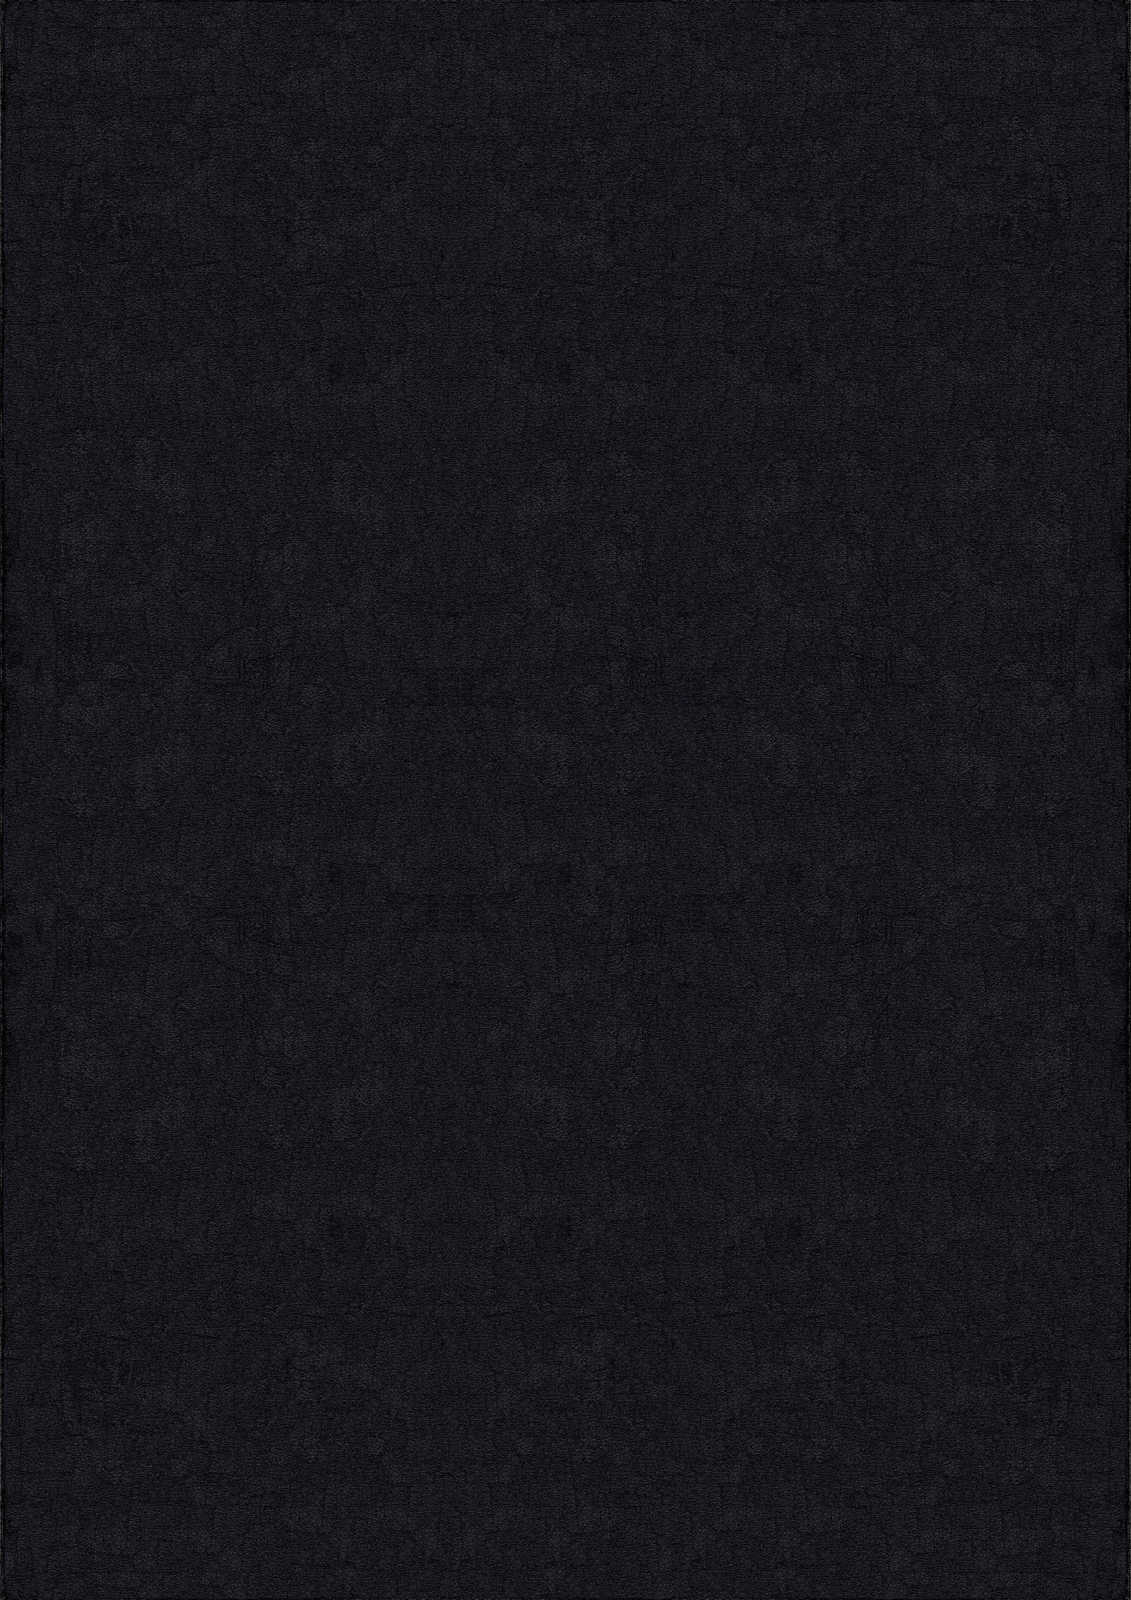             Velvety high pile carpet in black - 200 x 140 cm
        